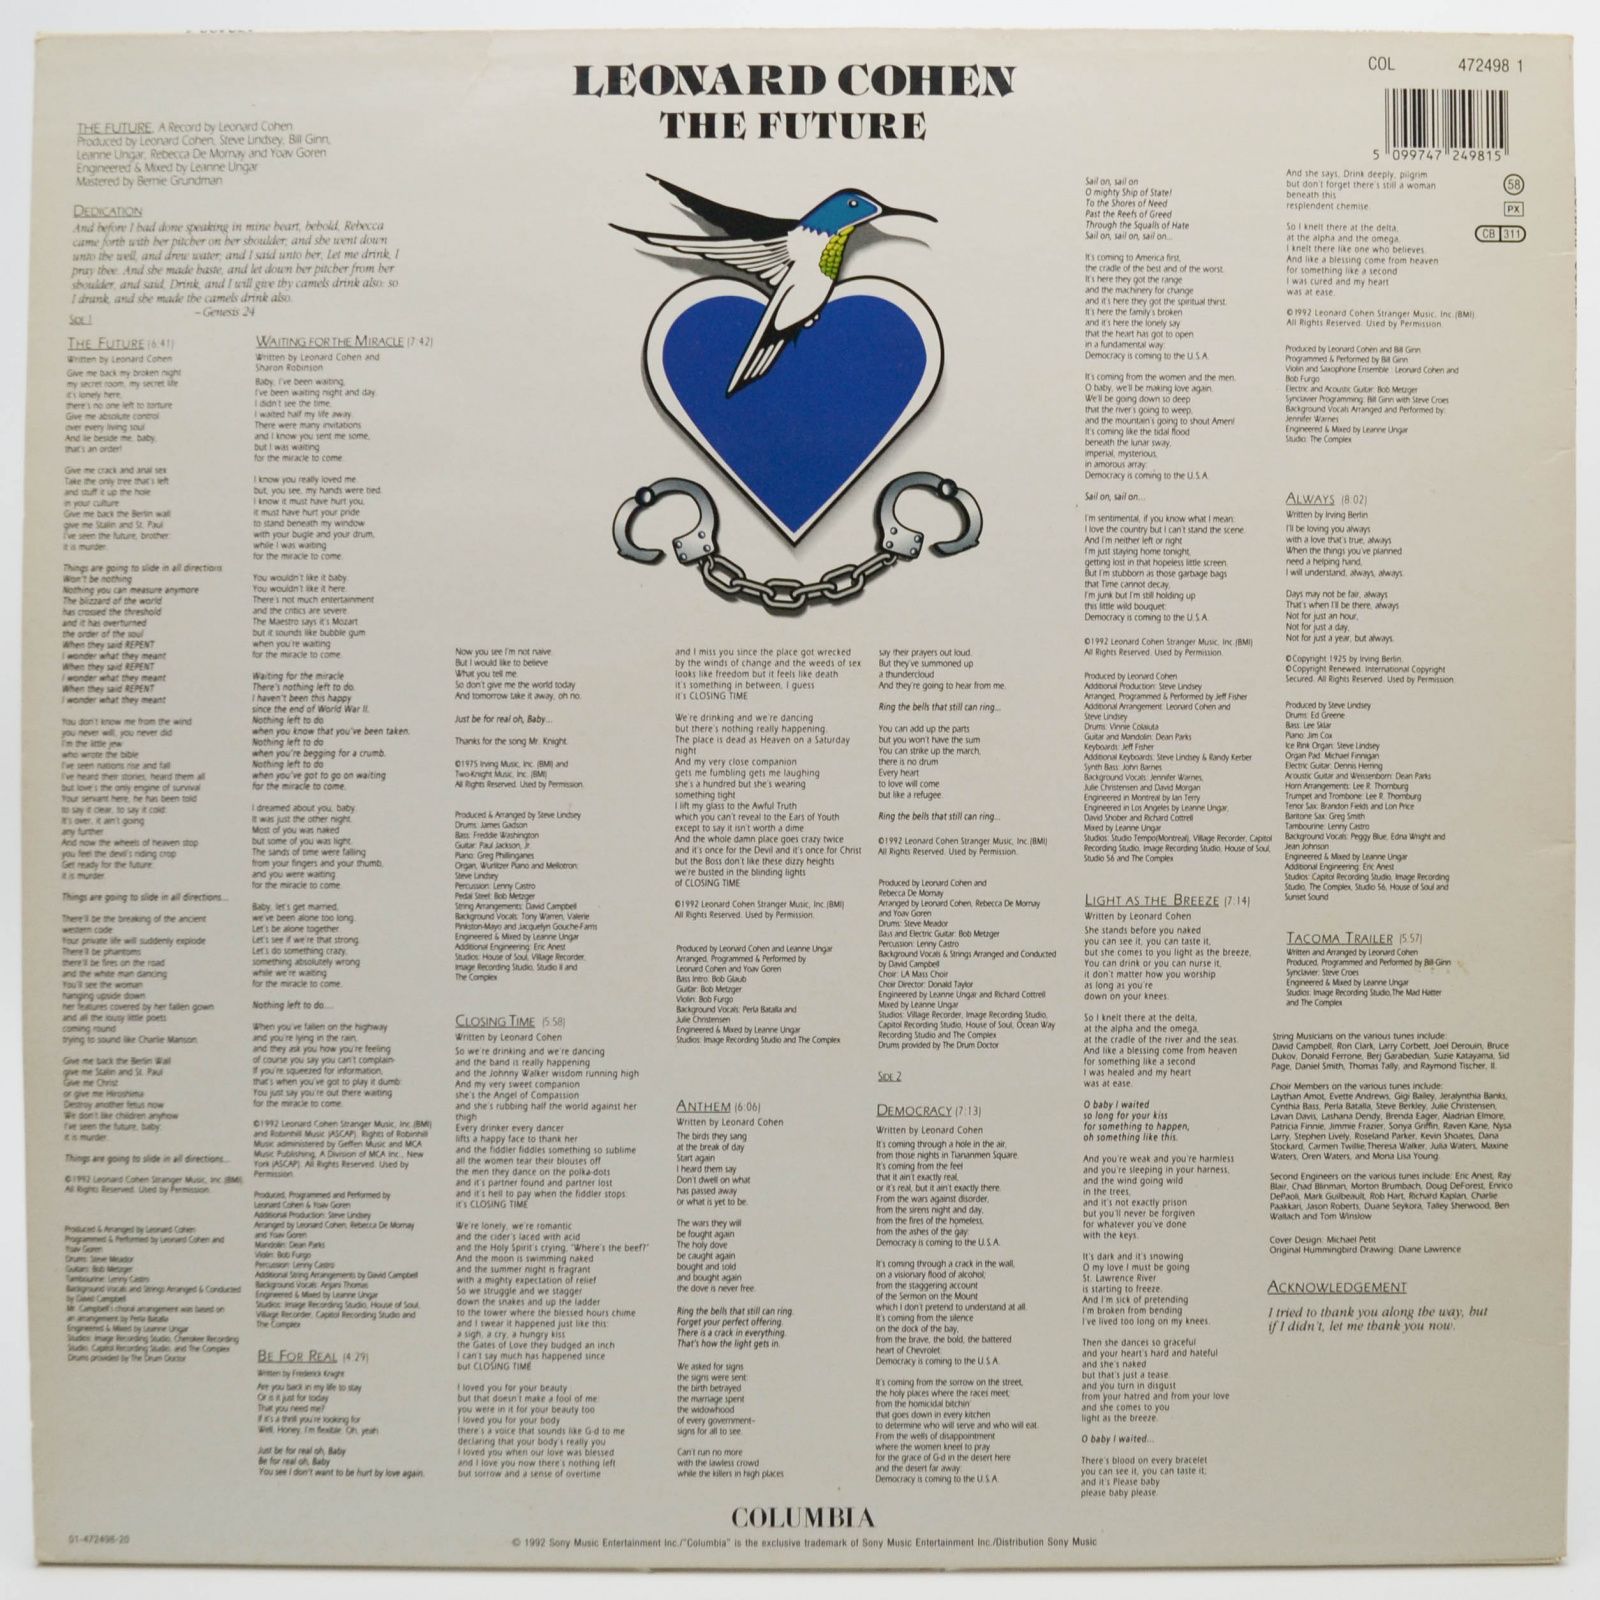 Leonard Cohen — The Future, 1992